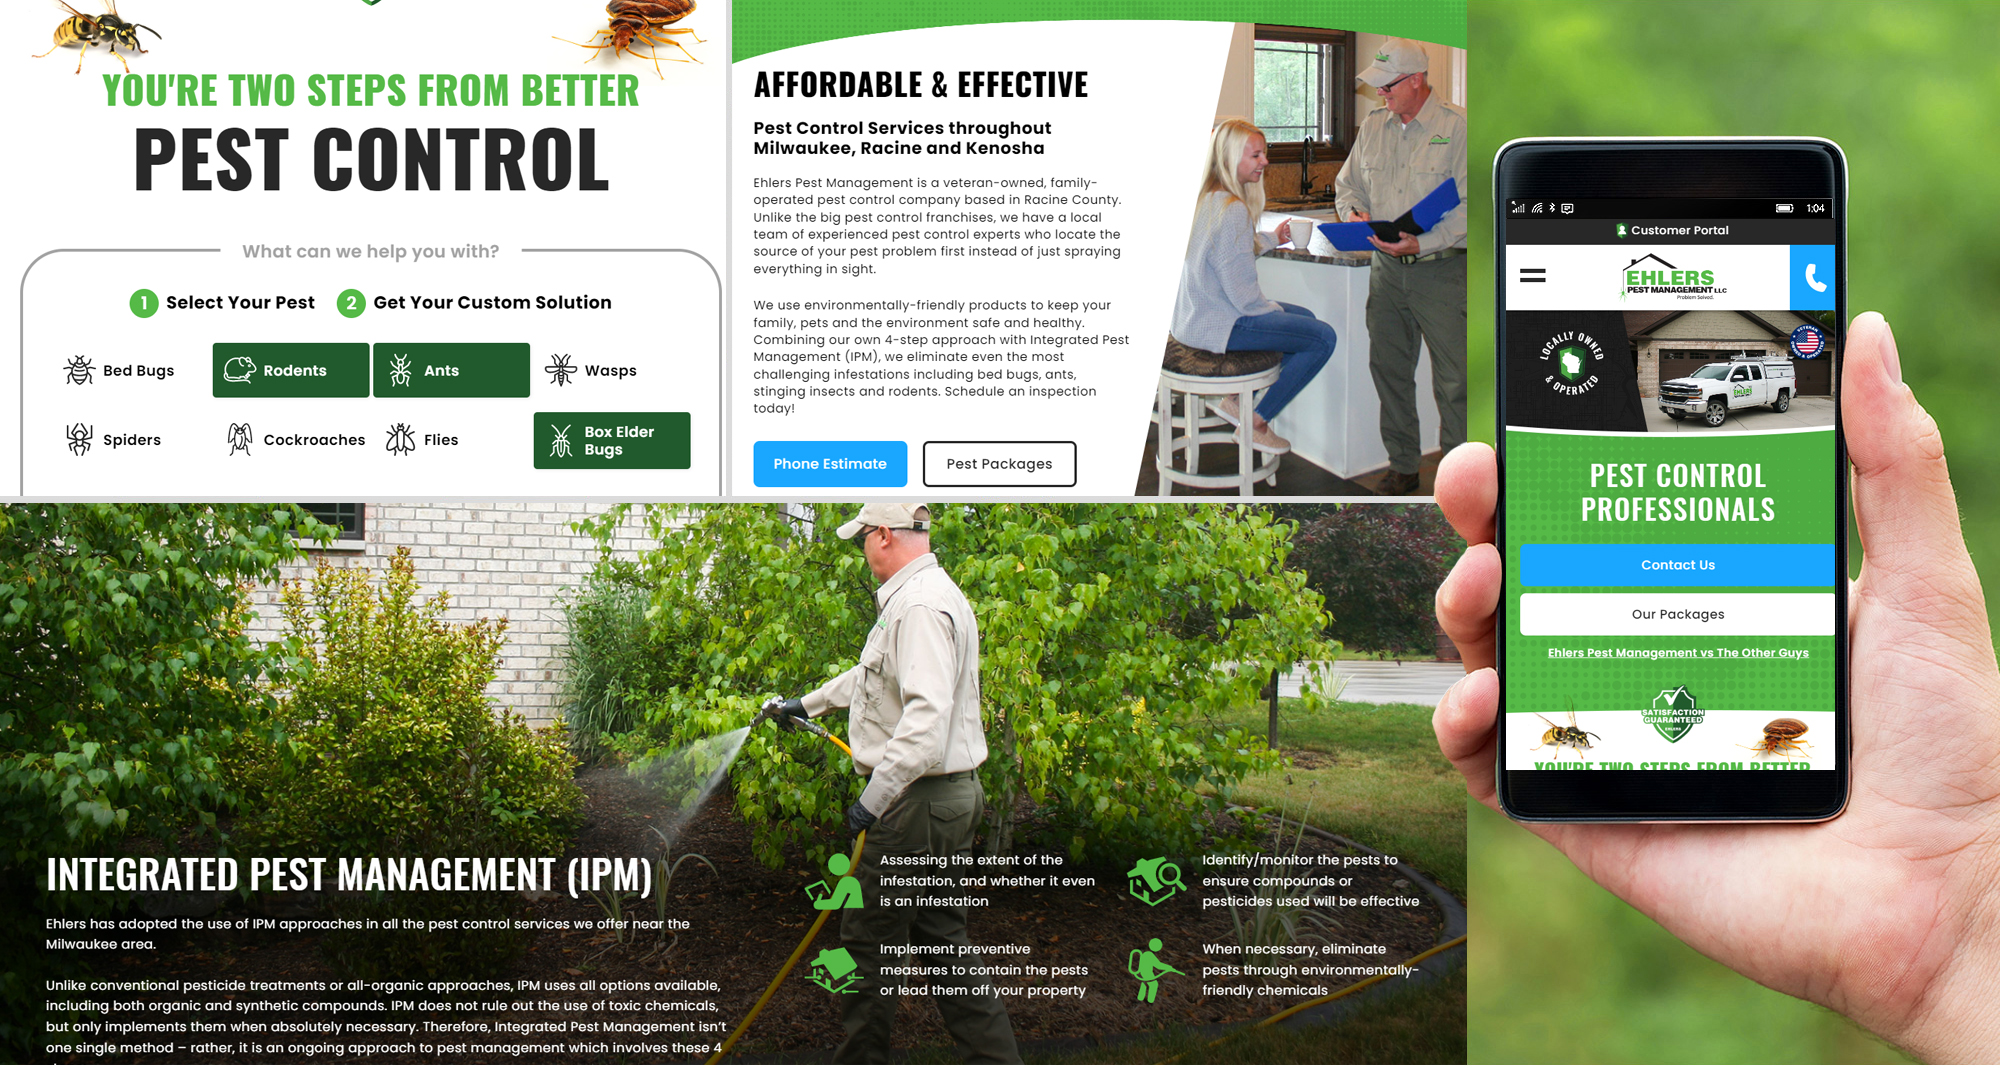 Milwaukee web marketing for Ehlers Pest Management